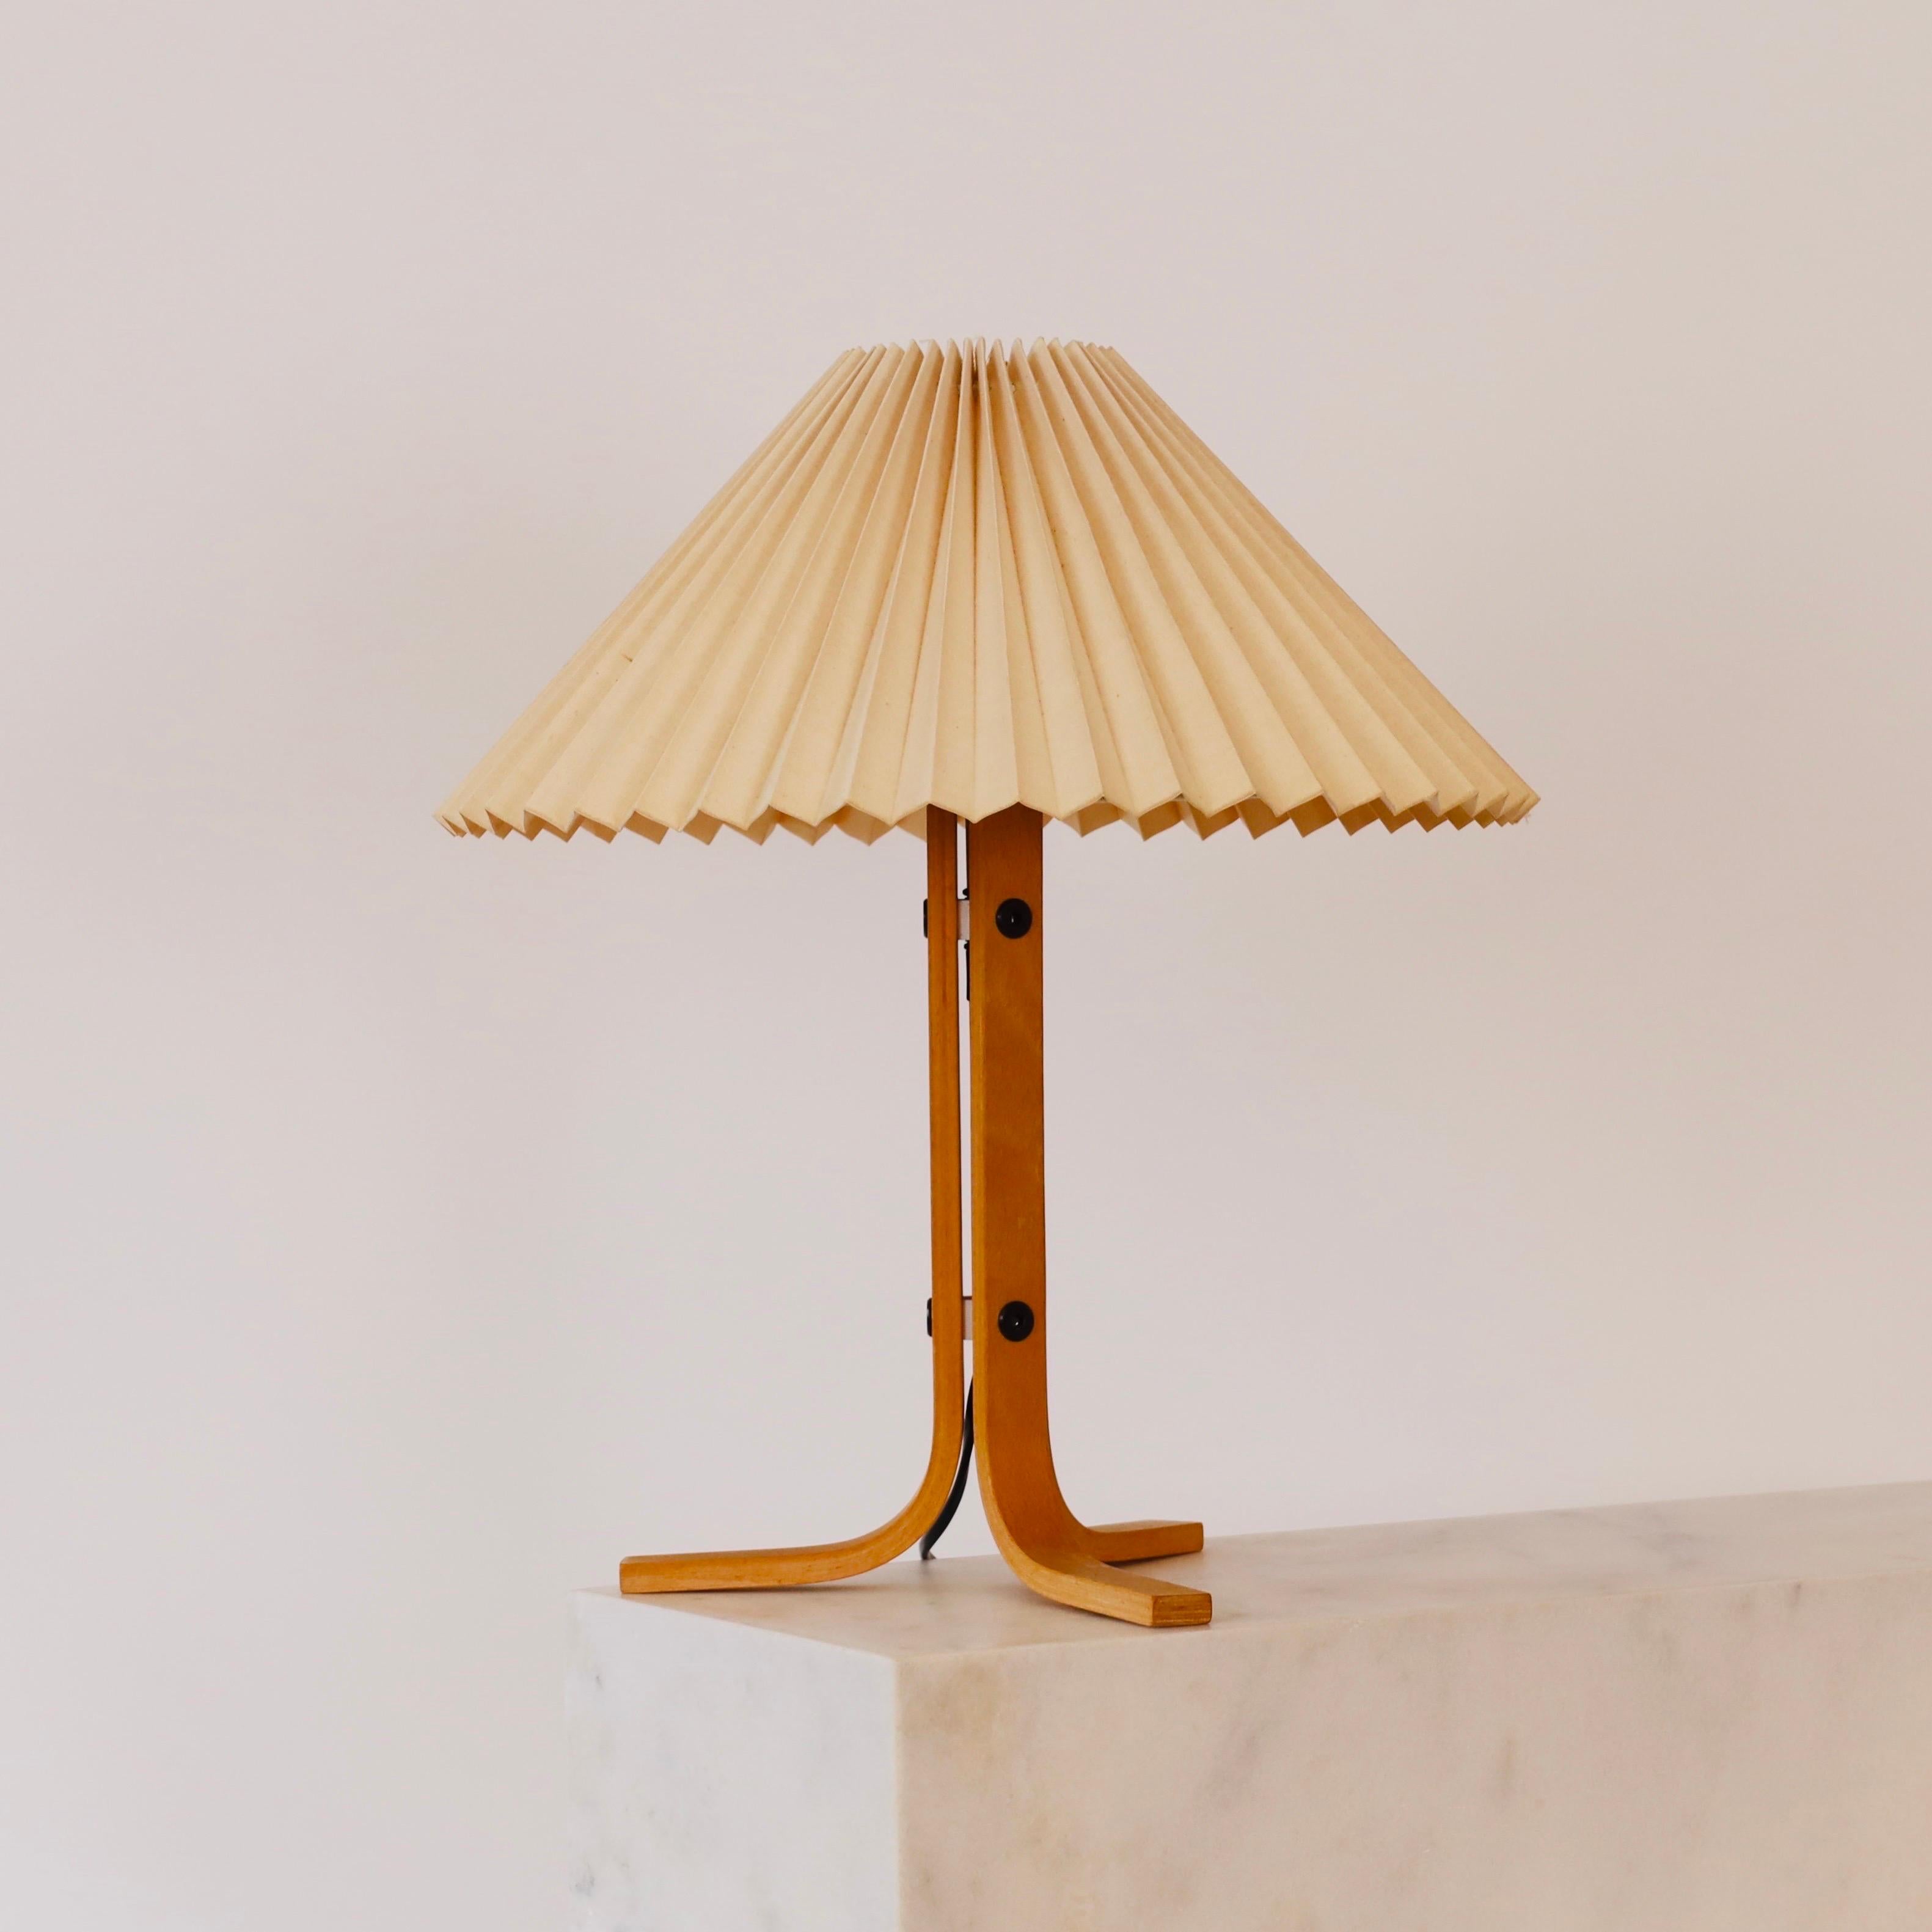 Eine dreibeinige Schreibtischlampe aus Buchenholz, entworfen von Mads Caprani in den 1970er Jahren für Caprani Light. Ein seltener Fund für ein schönes Haus.

* A  dreibeinige Schreibtischleuchte aus gebogenem Buchenfurnier mit plissiertem